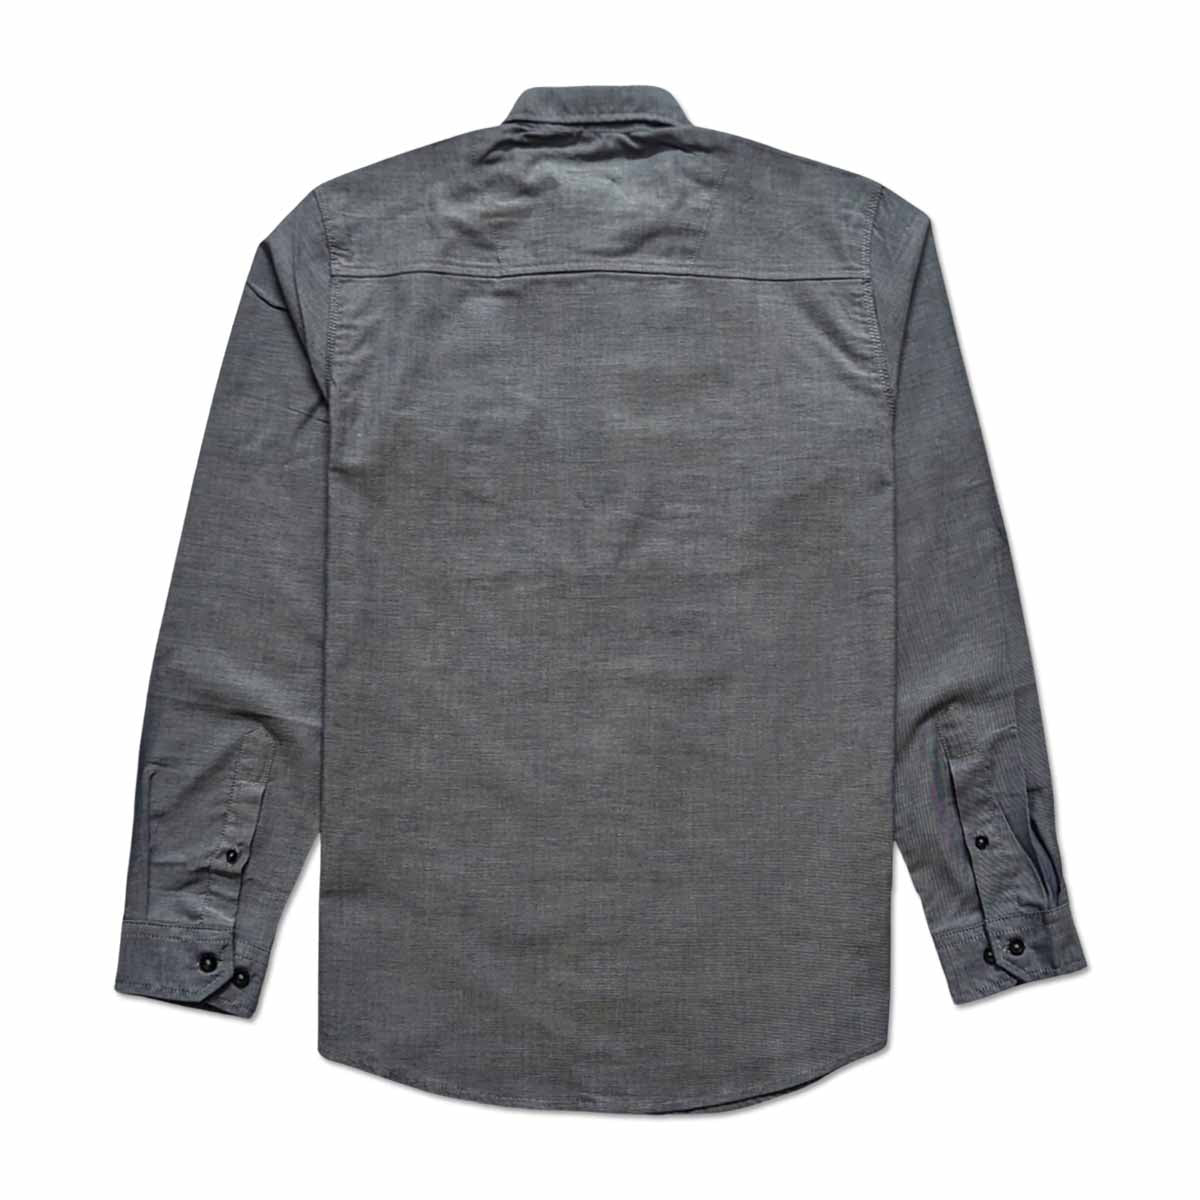 Brand Expo Premium Quality Branded Full Sleeves Shirt for Men's